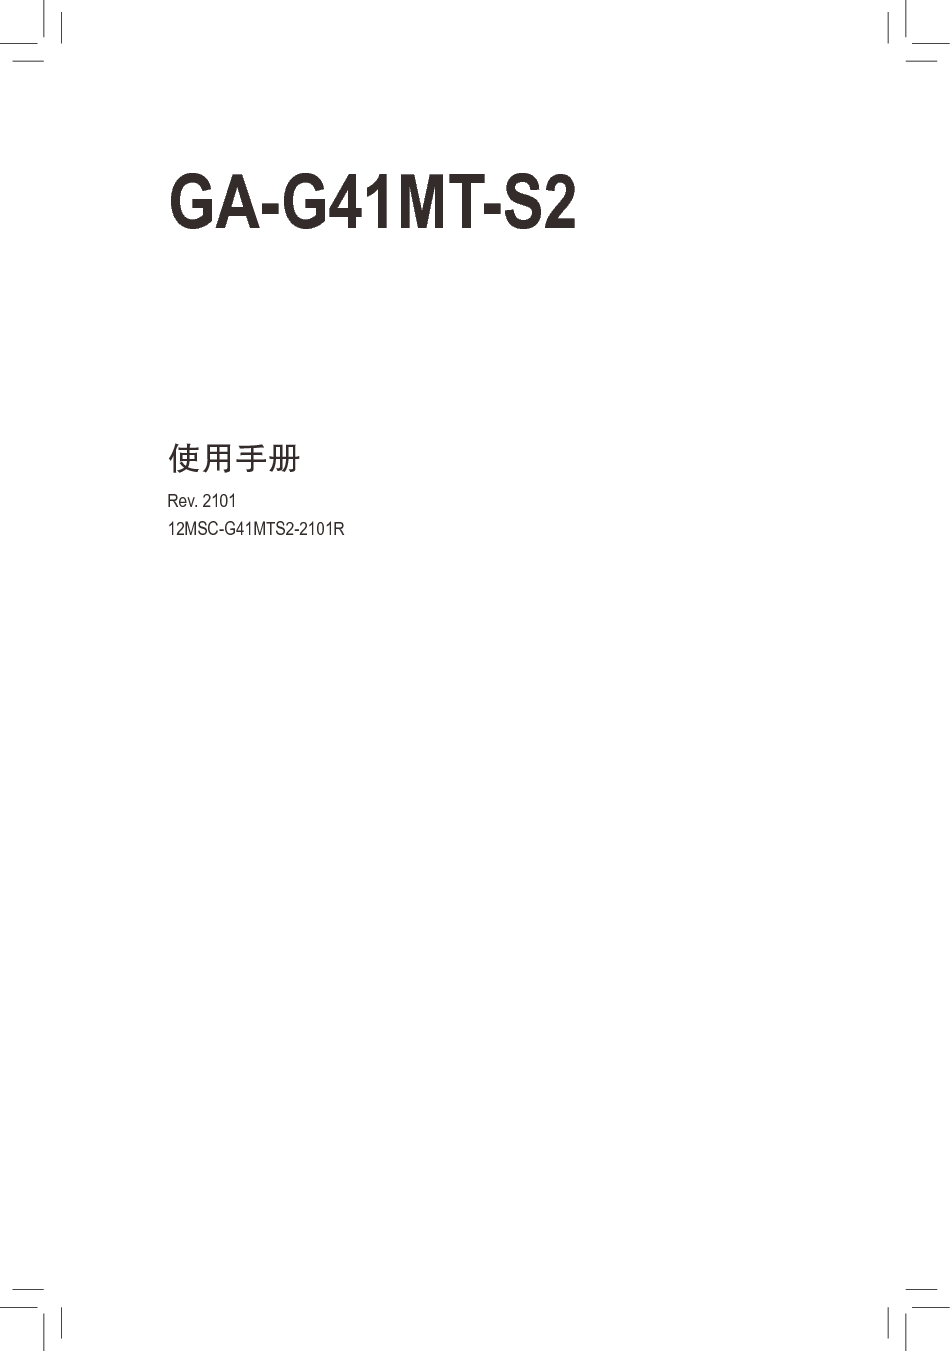 技嘉 Gigabyte GA-G41MT-S2 2101版 使用手册 封面